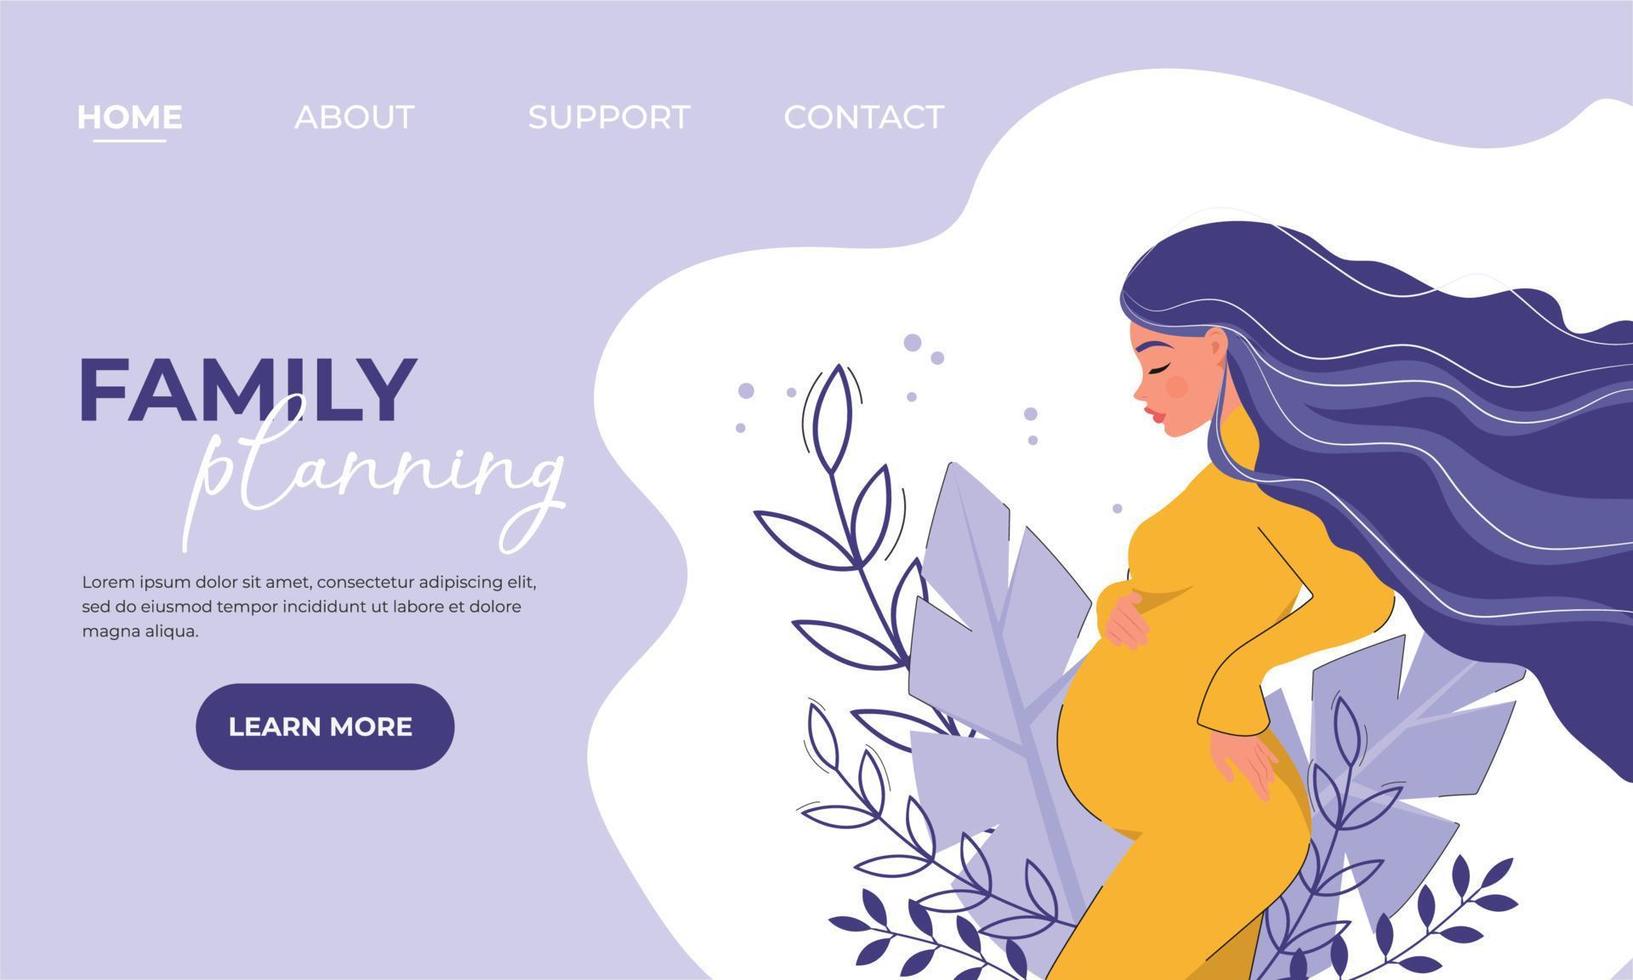 Zielseite der Familienplanungswebsite, einer Website für schwangere Frauen und diejenigen, die planen, mit einem Bild eines schwangeren Mädchens vektor